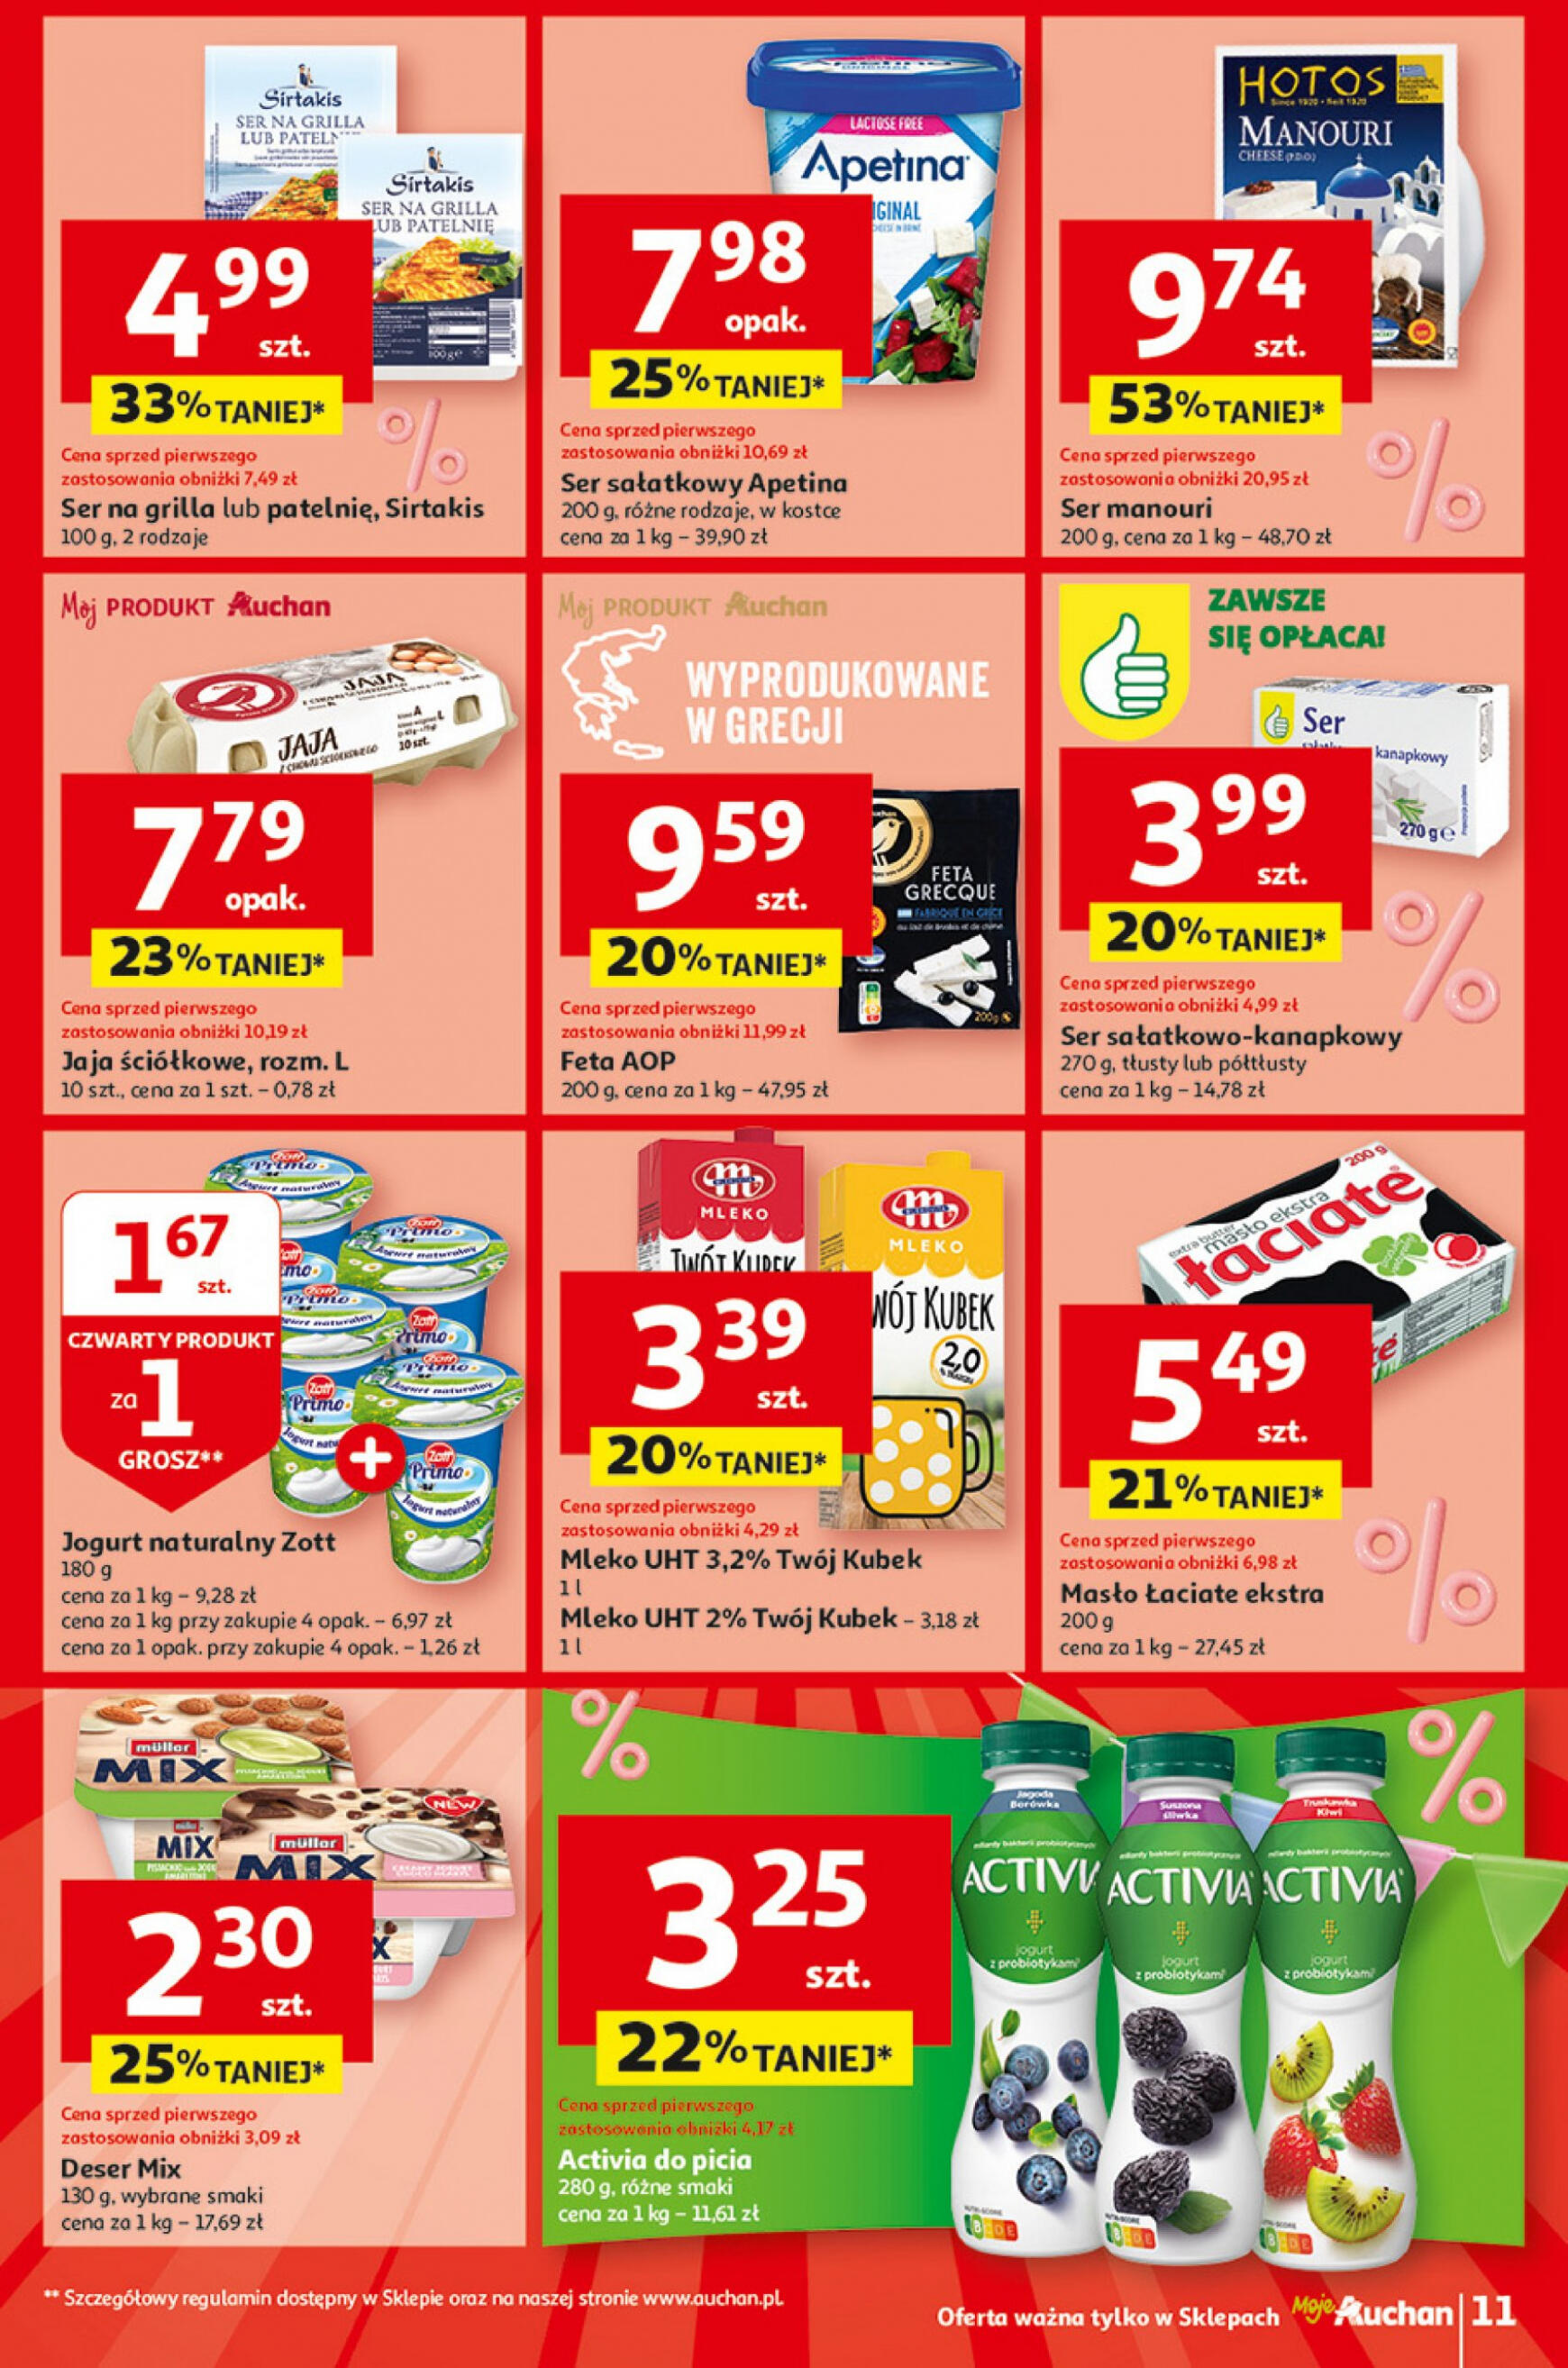 auchan - Moje Auchan - Gazetka Jeszcze taniej na urodziny gazetka aktualna ważna od 02.05. - 08.05. - page: 11